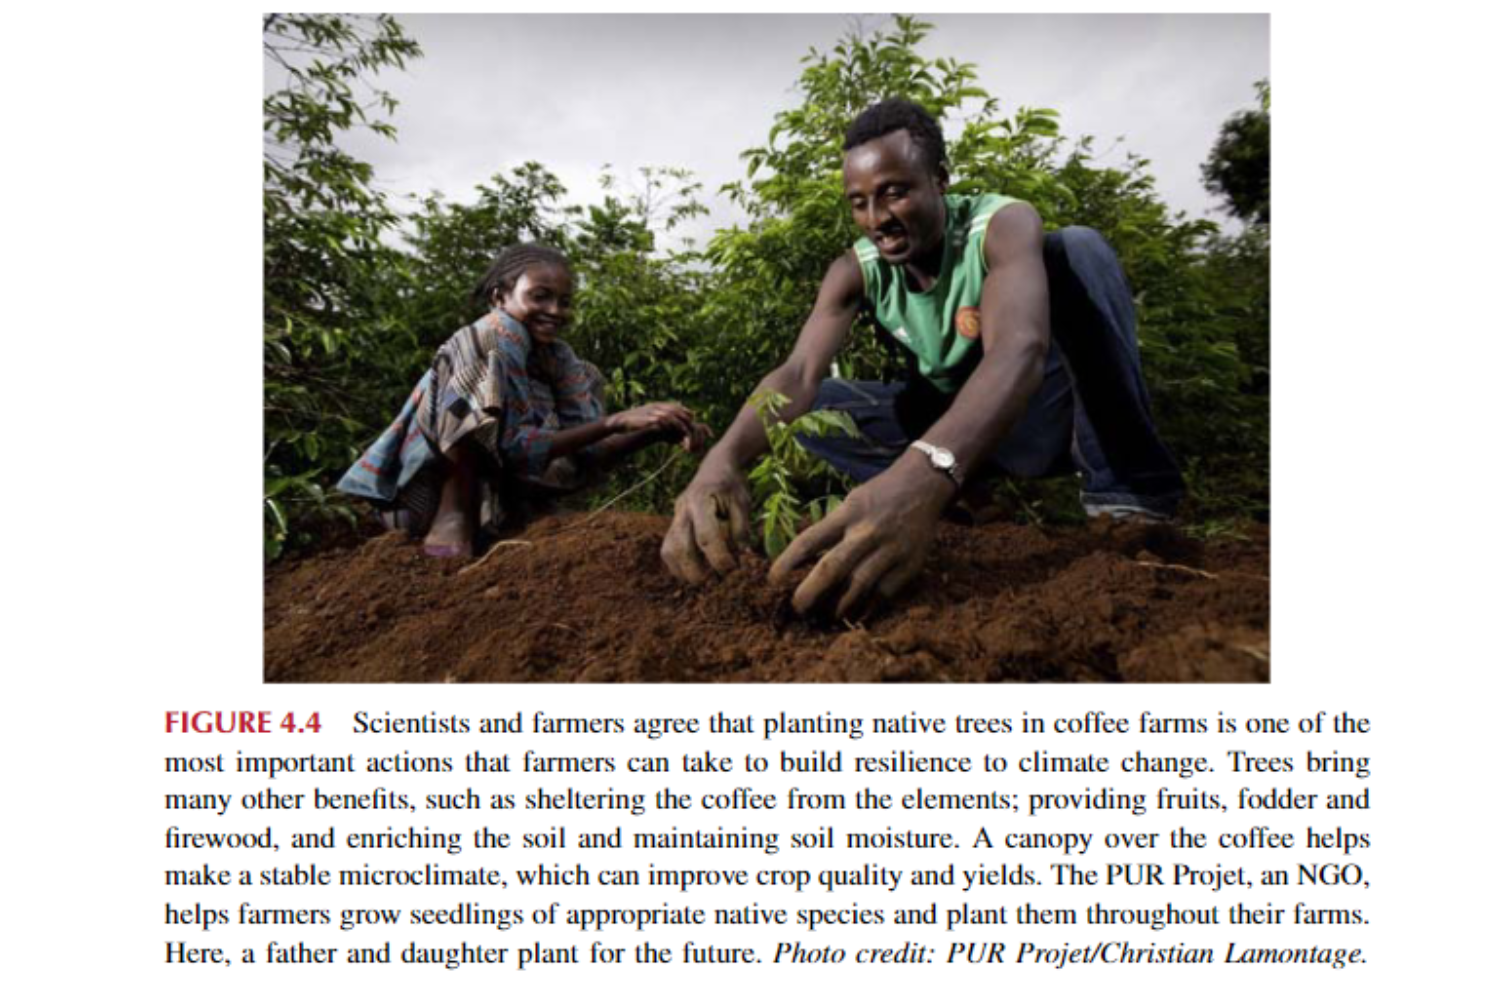 Các nhà khoa học và nông dân đồng ý rằng trồng cây bản địa tại các trang trại cà phê là một trong những hành động quan trọng nhất mà nông dân có thể thực hiện để xây dựng khả năng chống chịu trước biến đổi khí hậu. Cây cối còn mang lại nhiều lợi ích khác như che chở cho cà phê khỏi các tác nhân thời tiết; cung cấp trái cây, thức ăn gia súc và củi, đồng thời làm giàu đất và duy trì độ ẩm cho đất. Một tán cây cà phê giúp tạo ra vi khí hậu ổn định, có thể cải thiện chất lượng và năng suất cây trồng. Dự án PUR, một tổ chức phi chính phủ, giúp nông dân trồng cây giống các loài bản địa thích hợp và trồng chúng khắp trang trại của họ. Ở đây, một người cha và con gái trồng cây cho tương lai.